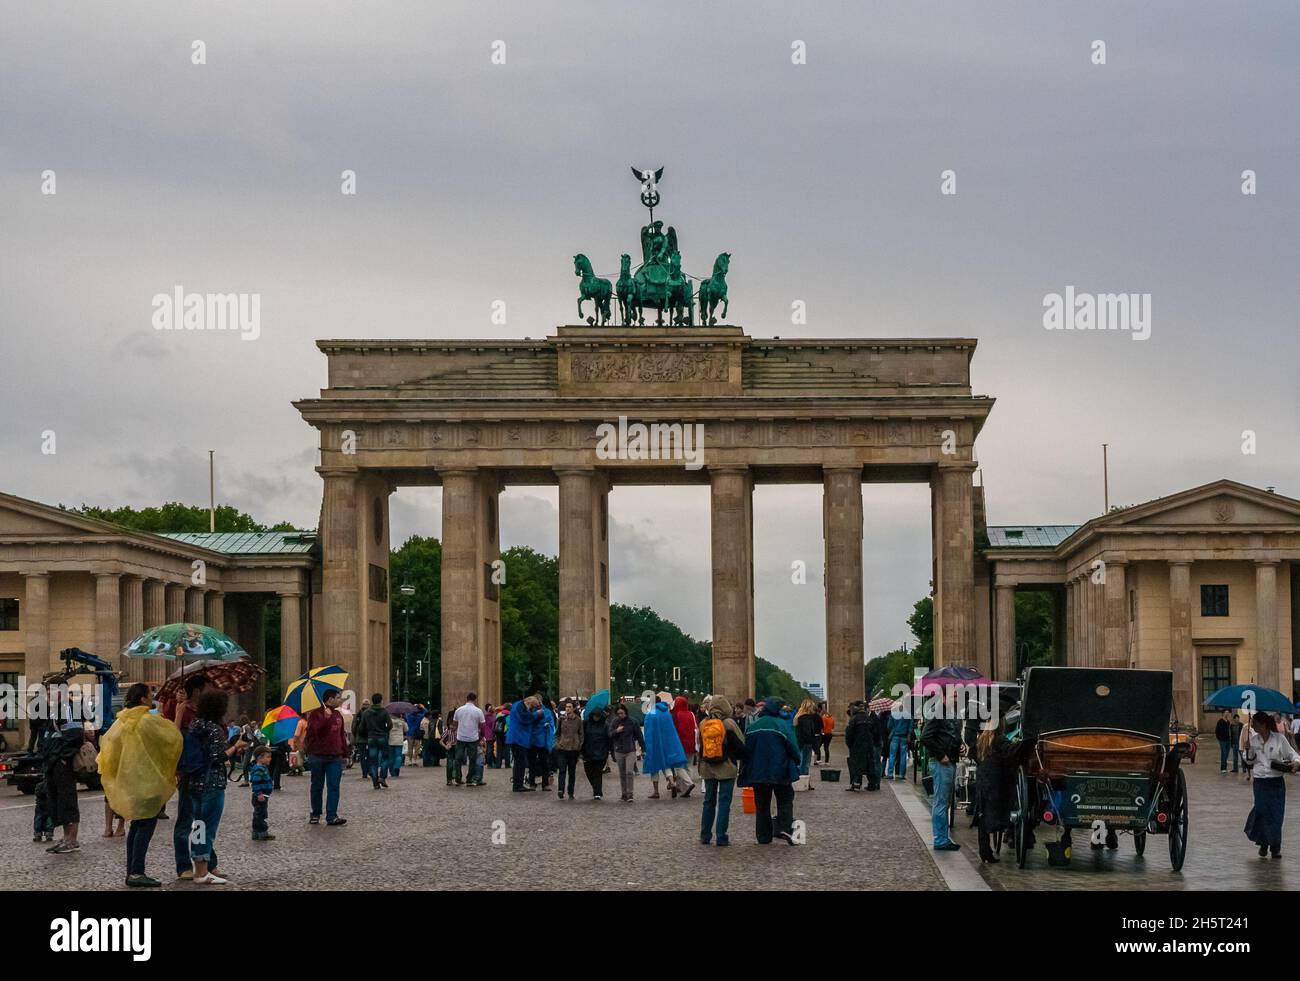 Bella vista del famoso monumento neoclassico di Berlino, la porta di Brandeburgo (Brandenburger Tor) in una giornata piovosa al Pariser Platz. Il cancello è... Foto Stock